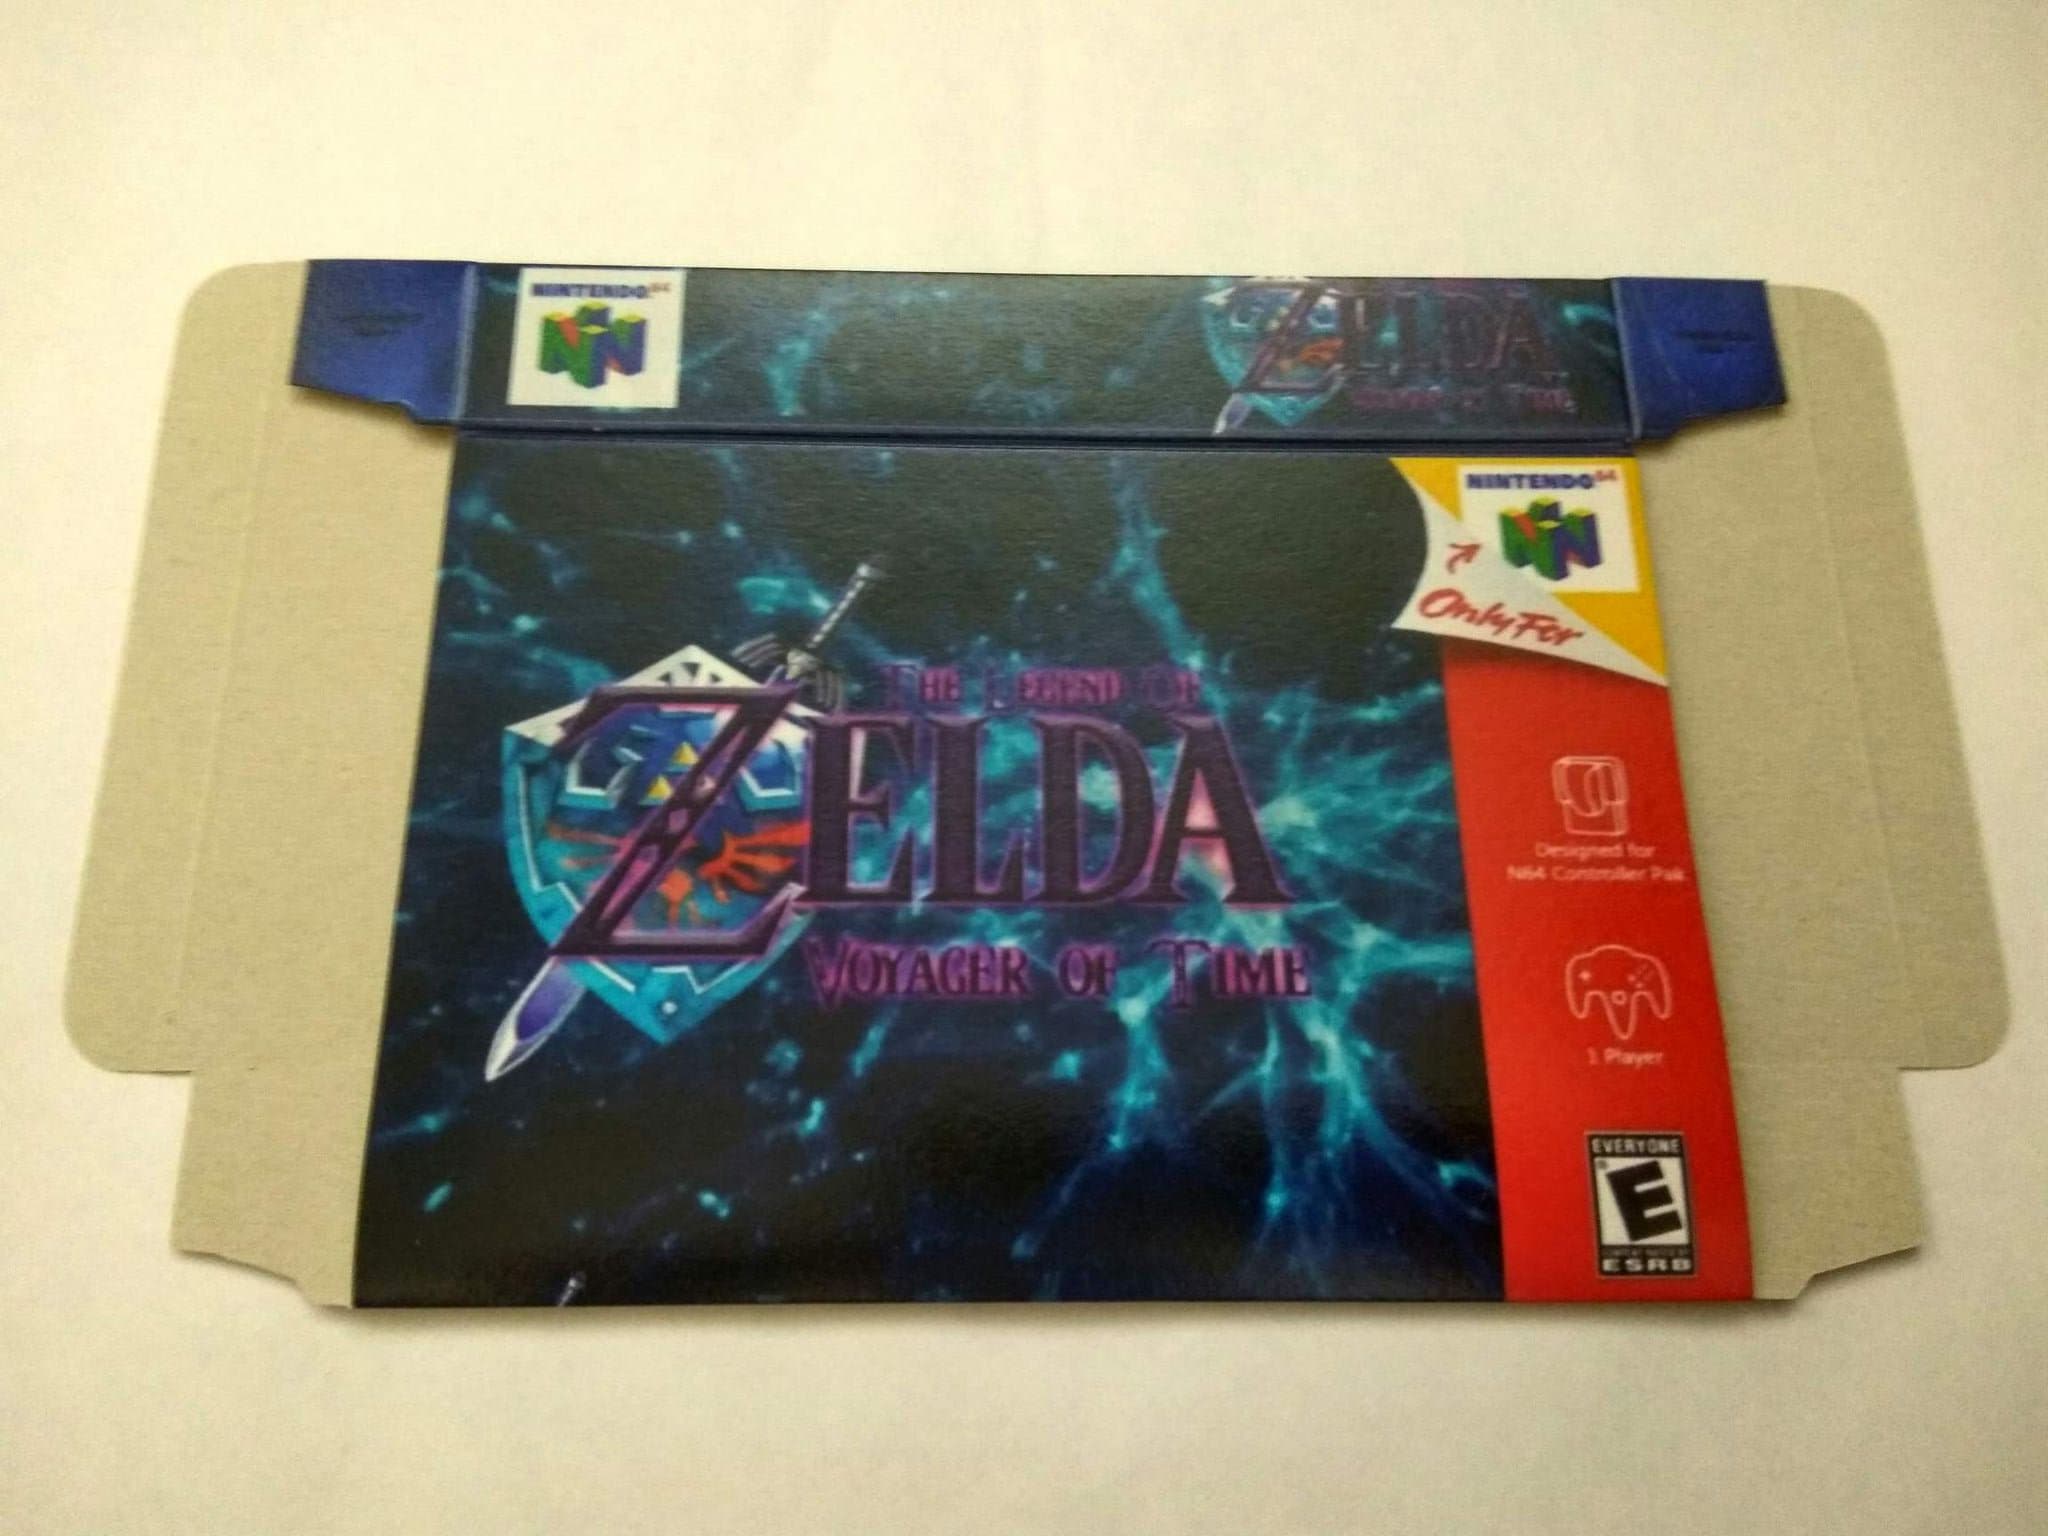 Best Buy: The Legend of Zelda: Ocarina of Time 3D Nintendo 3DS 1234